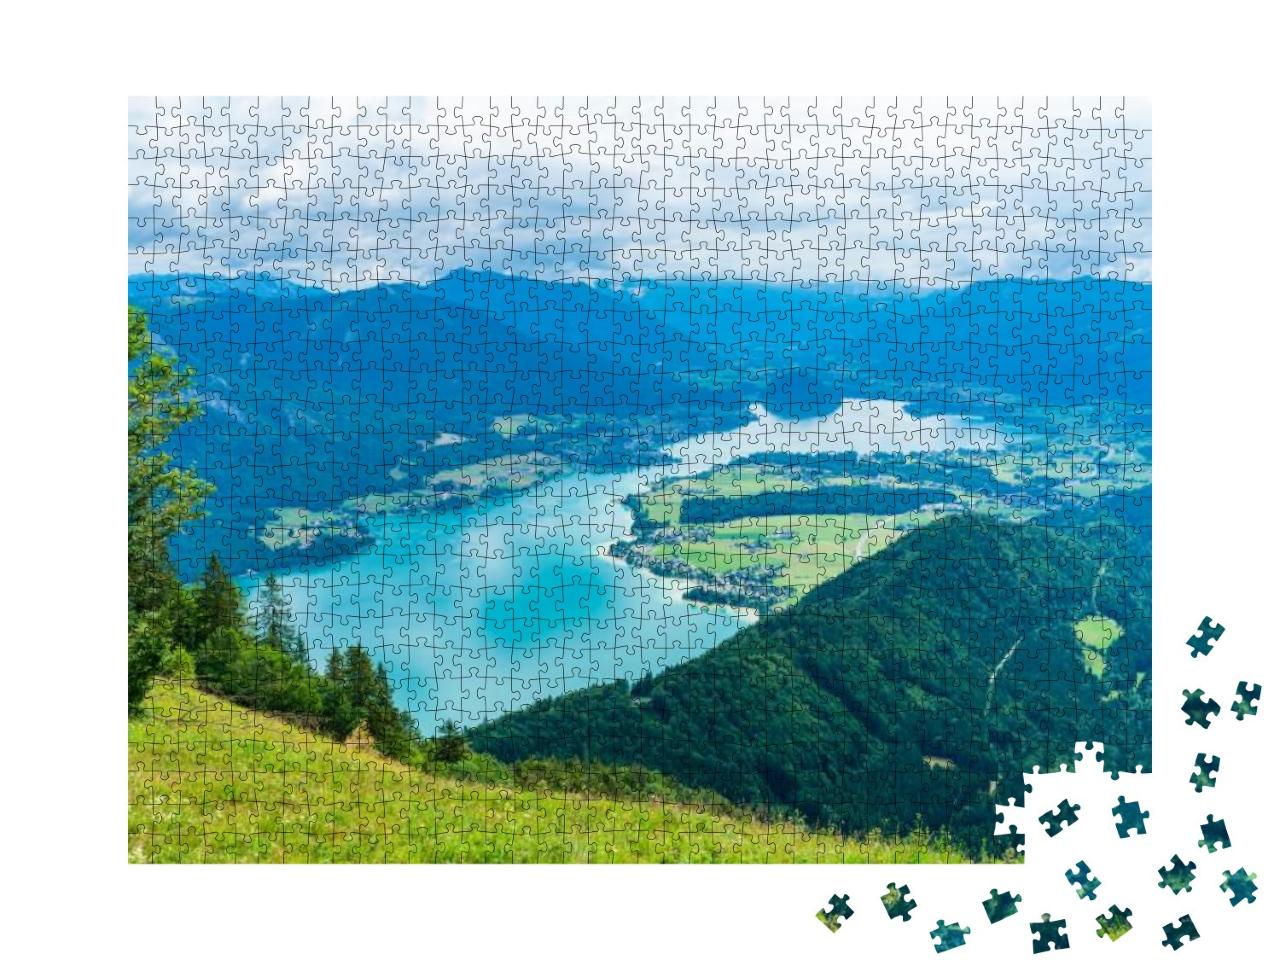 Puzzle 1000 Teile „Wolfgangsee mit Zwölferhorn, Salzkammergut, Österreich“